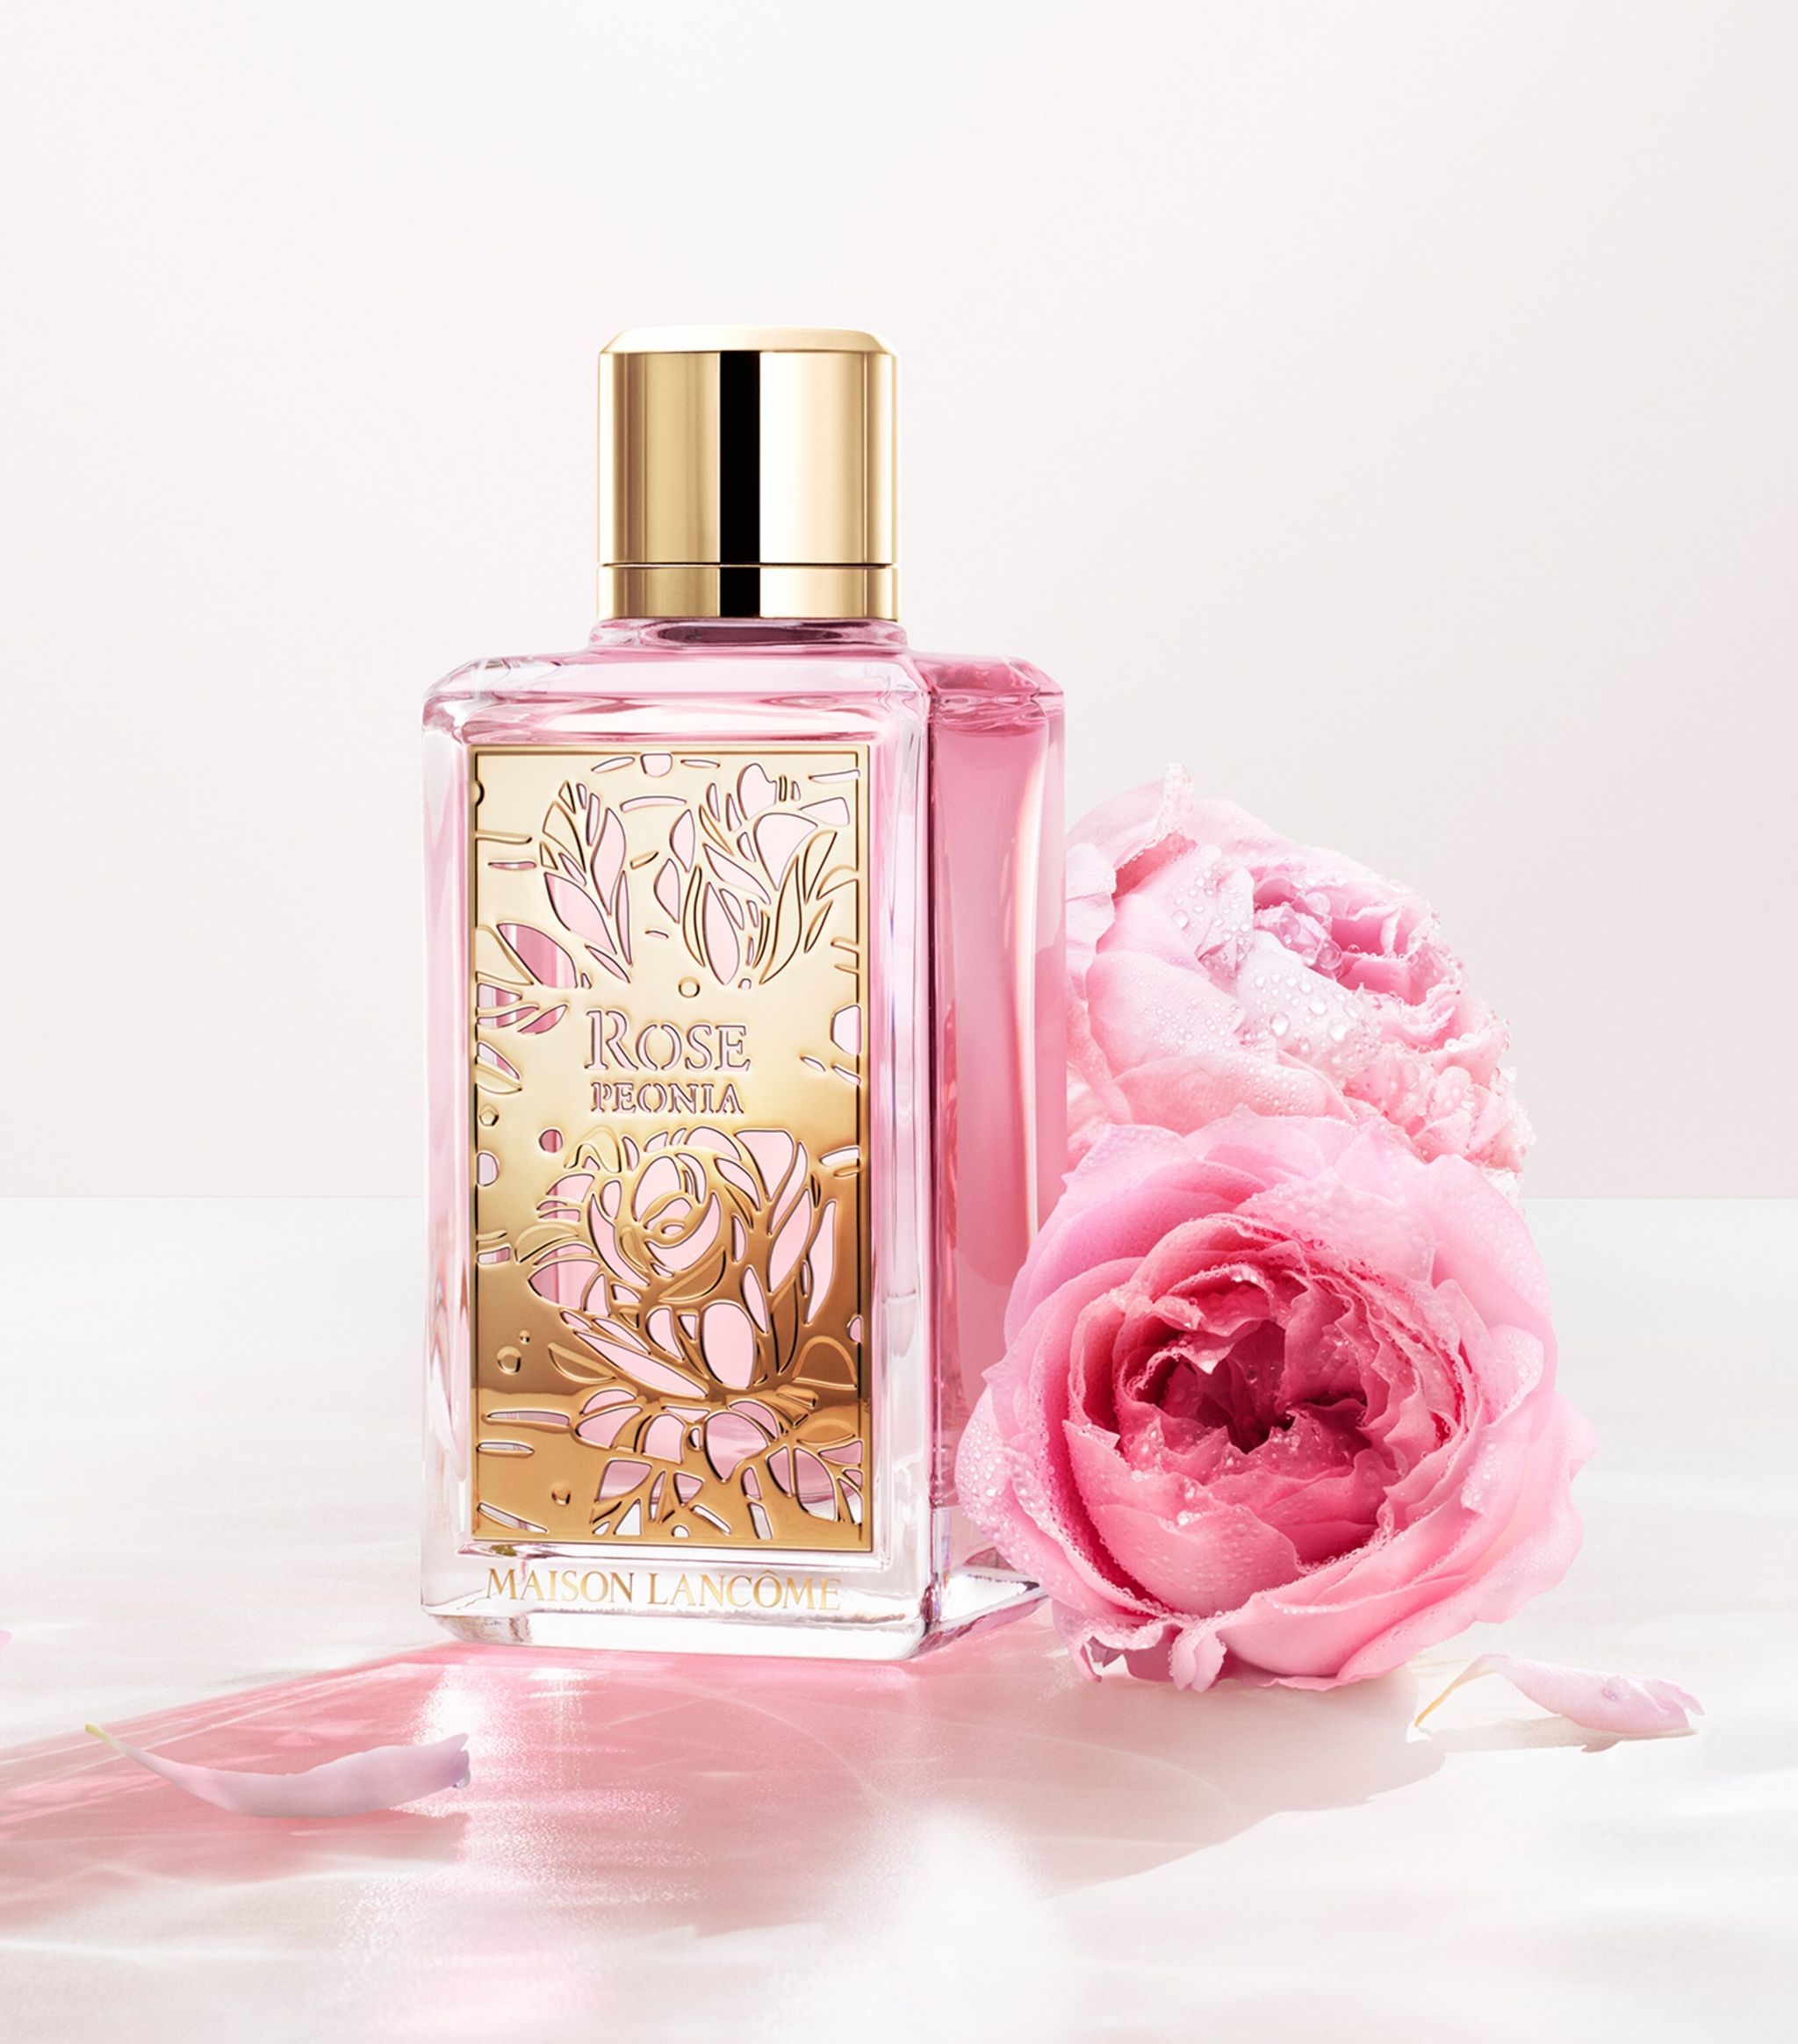 Rose Peonia Lancome Parfum Ein Neues Parfum Für Frauen 2021